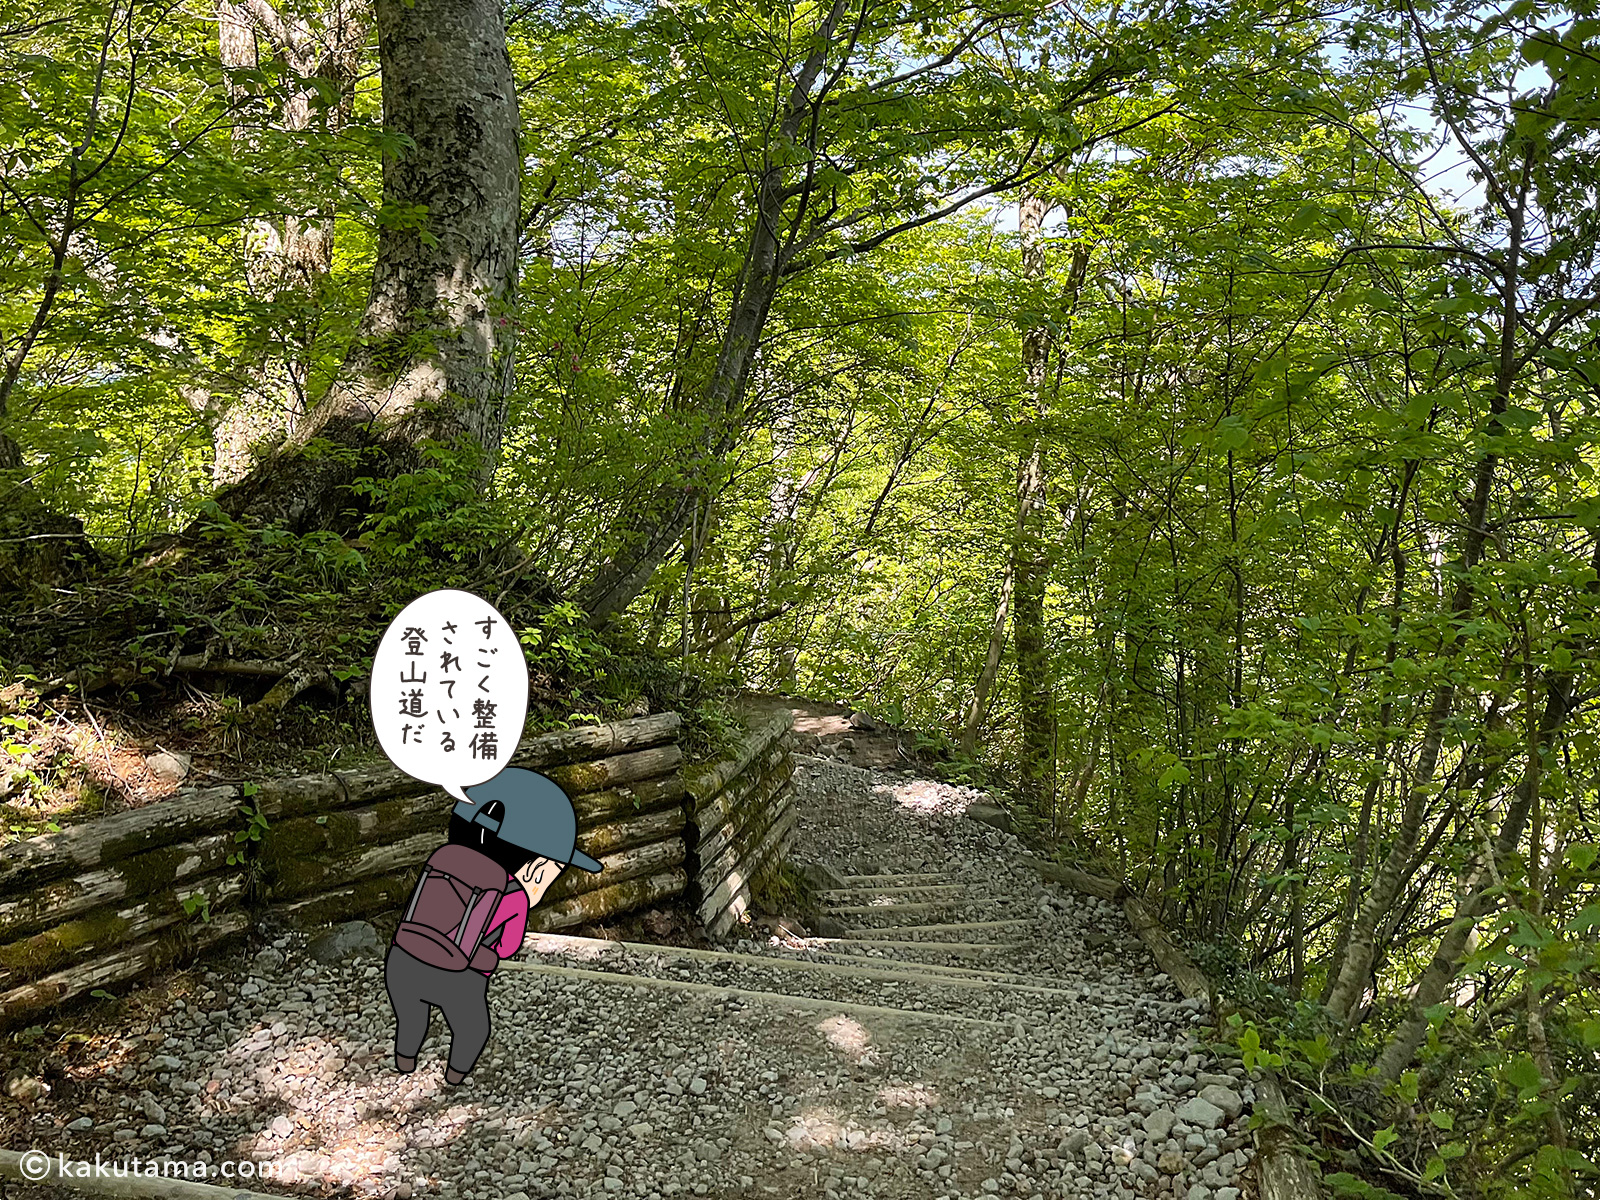 鳥取大山の夏山登山道の写真と登山者のイラスト